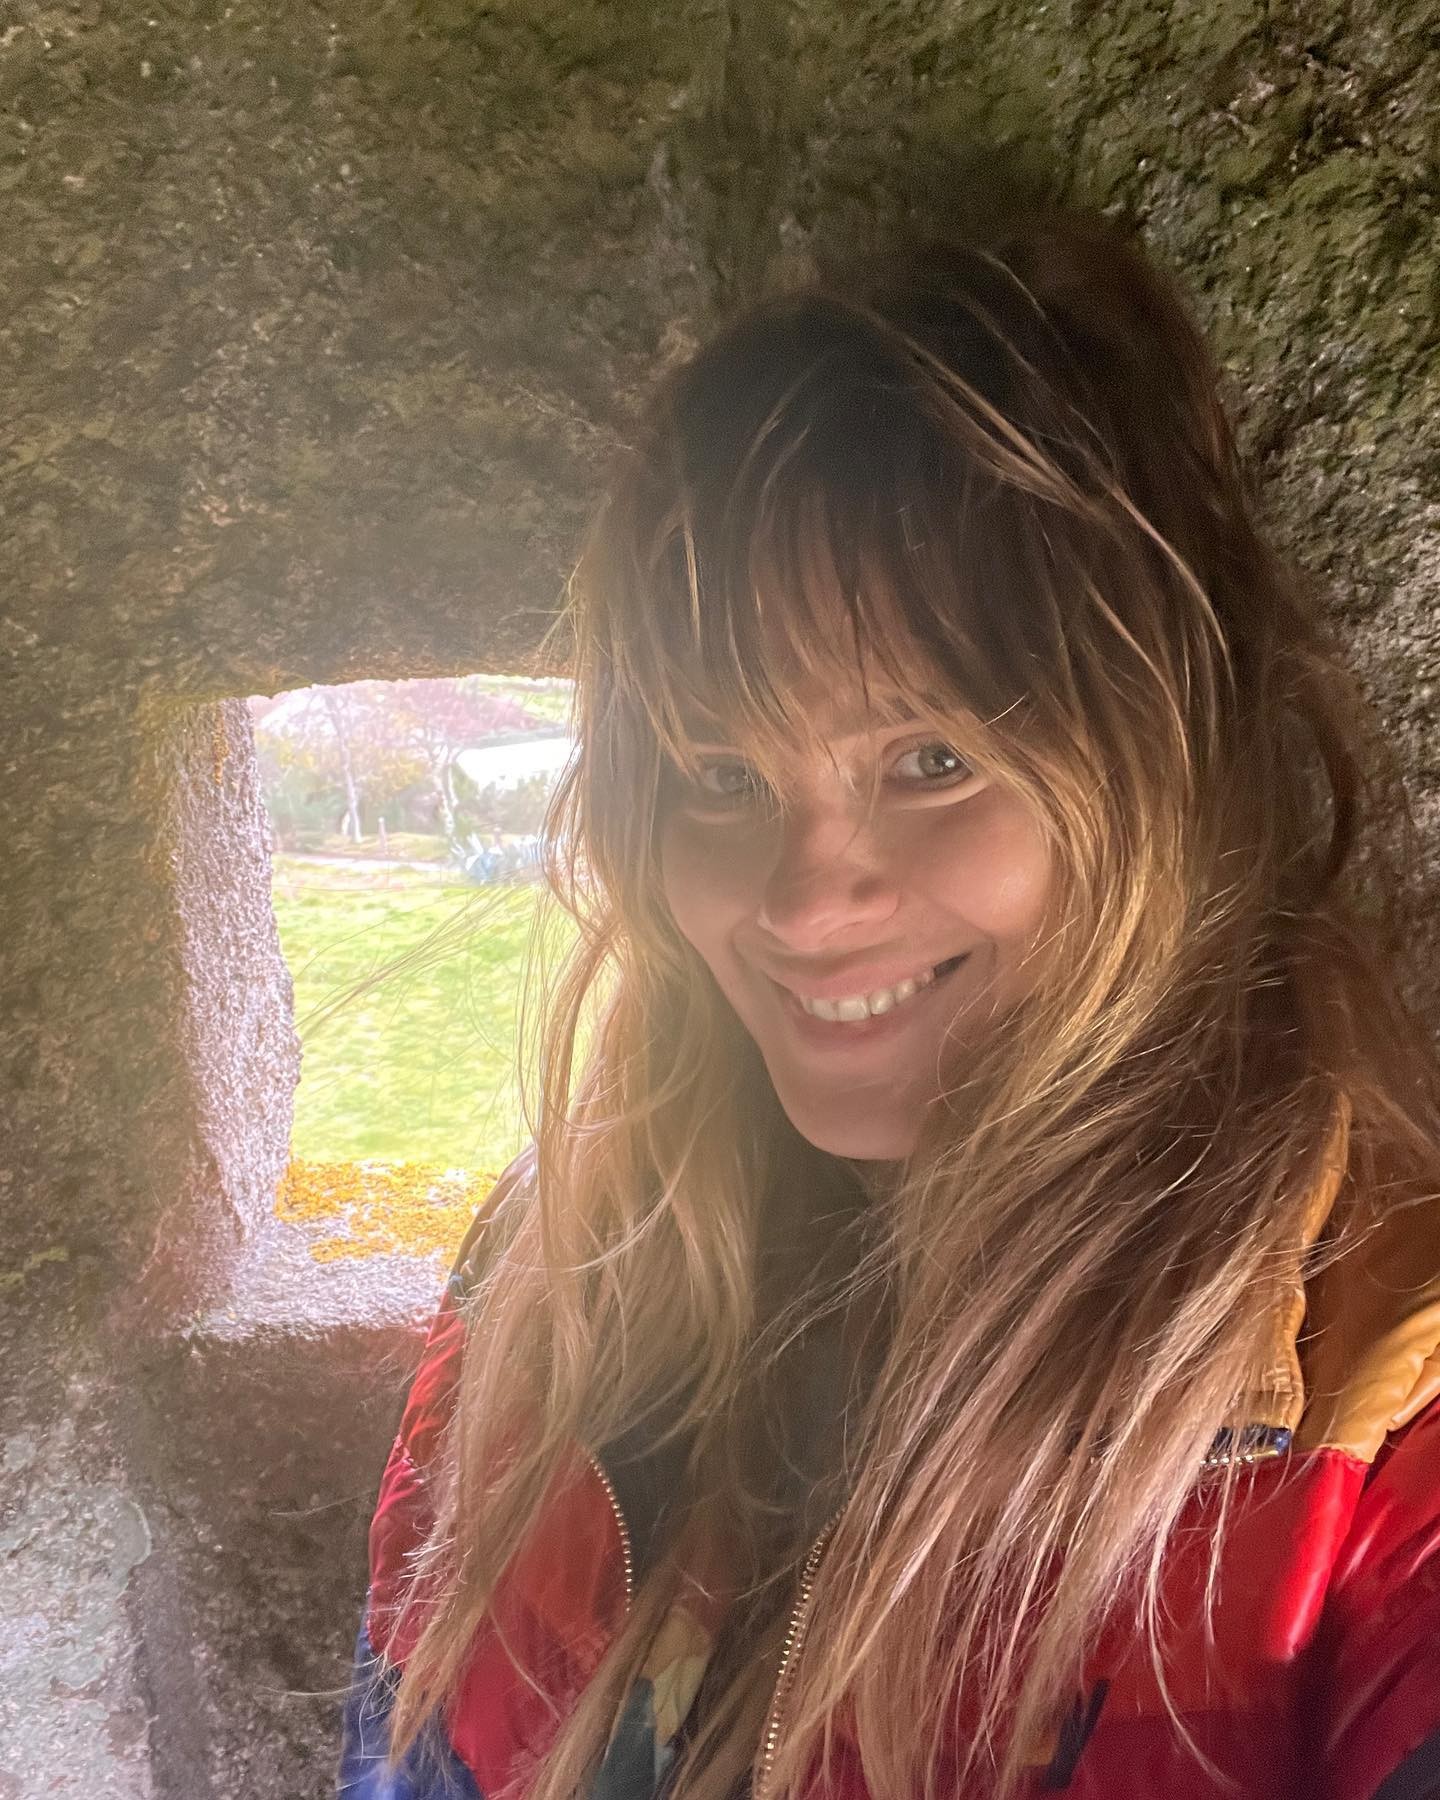 Carolina Dieckmann abre um novo álbum de fotos em Portugal (Foto: Reprodução / Instagram)